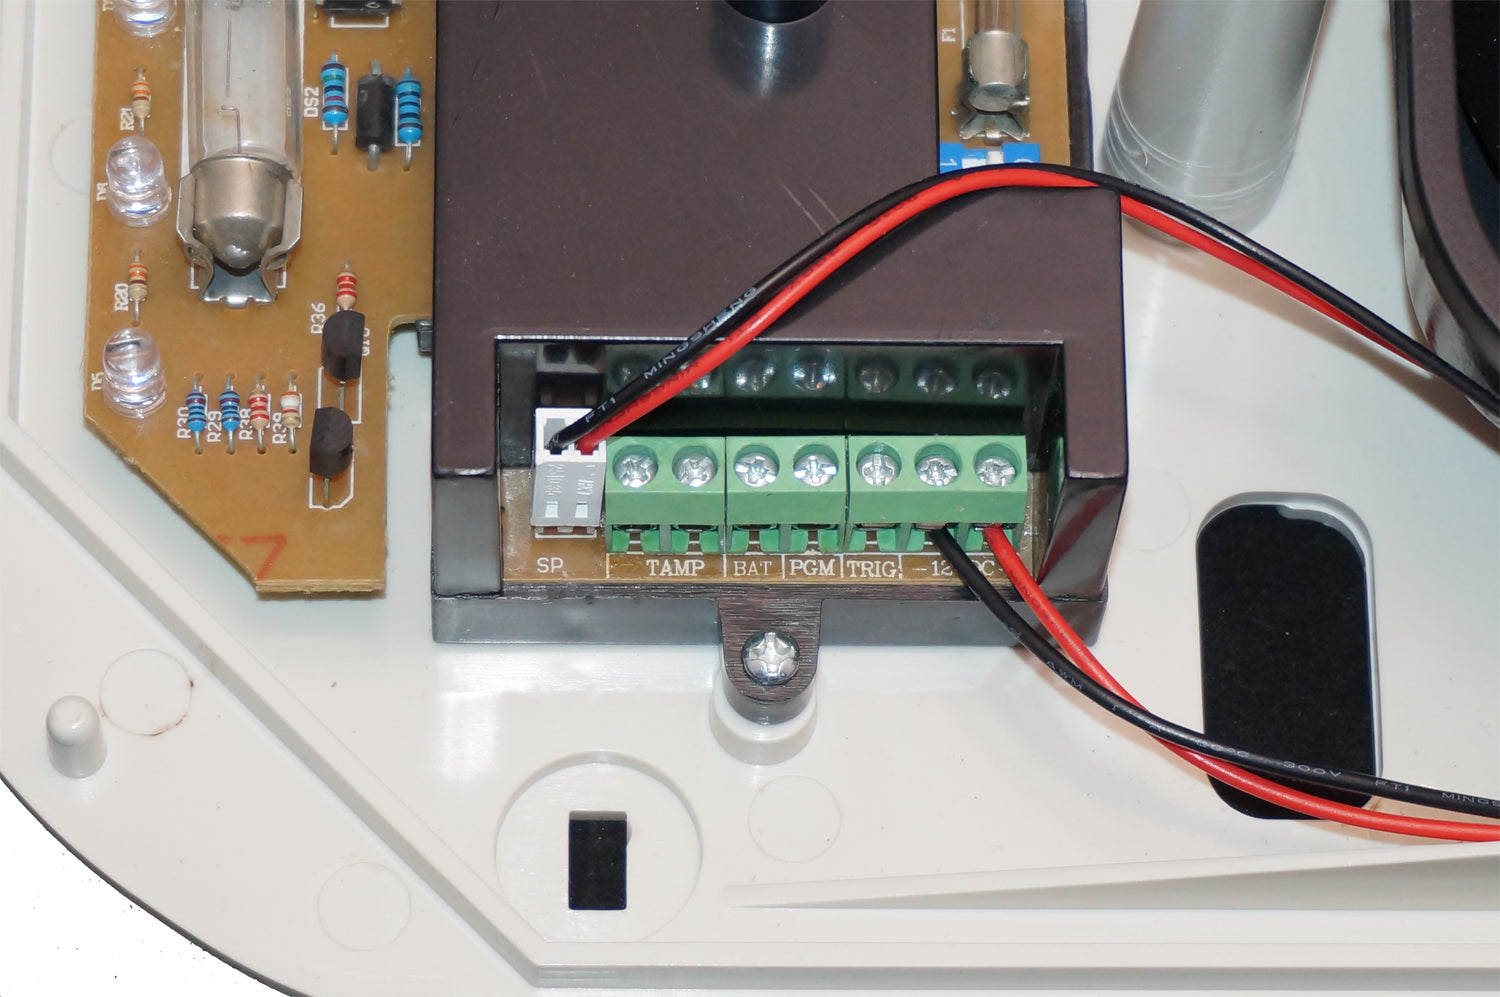 Sirena allarme FUTURA2 batteria inclusa via filo da esterno per antifurto universale SIRENA FILARE 120 DB INTERNO ESTERNO LAMPEGGIANTE FILARE ANTIFURTO ALLARME